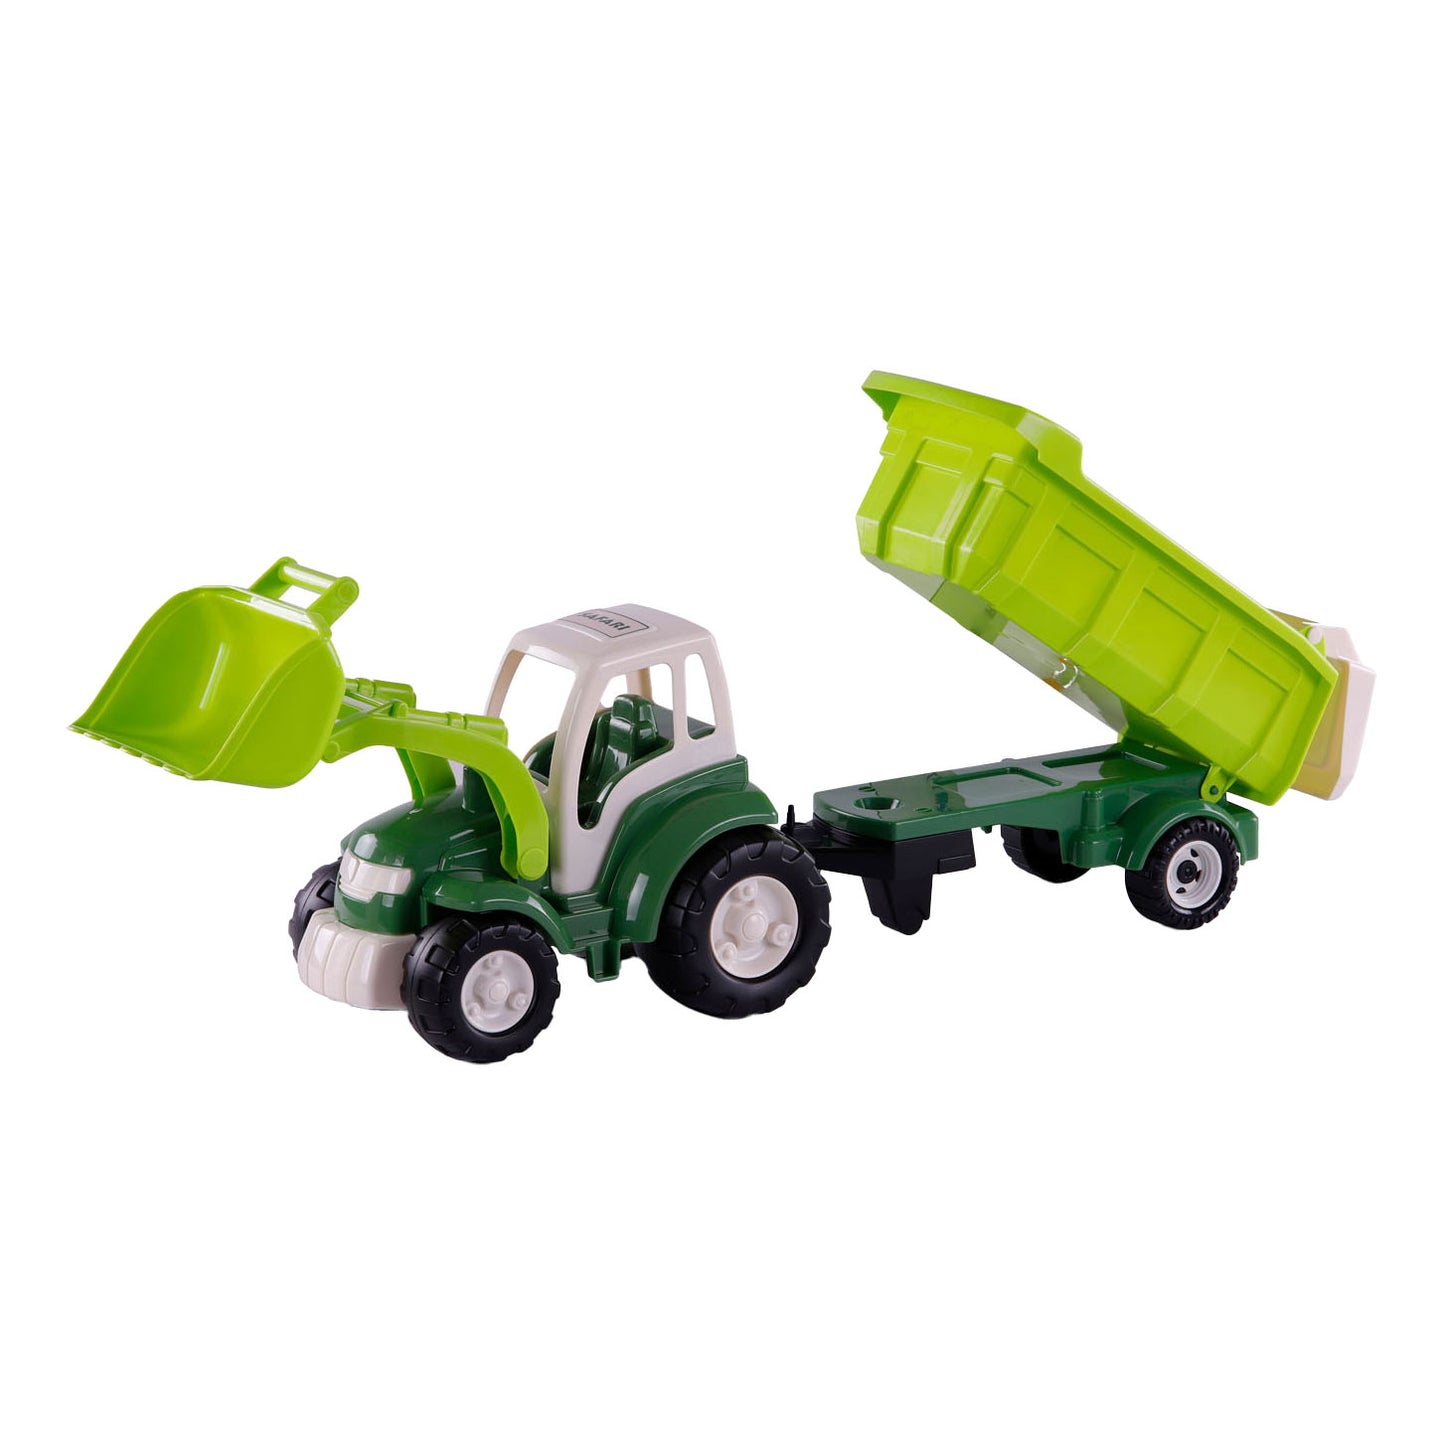 Cavallino Toys Cavallino XL Tractor Green con rimorchio inclinato, 86,5 cm